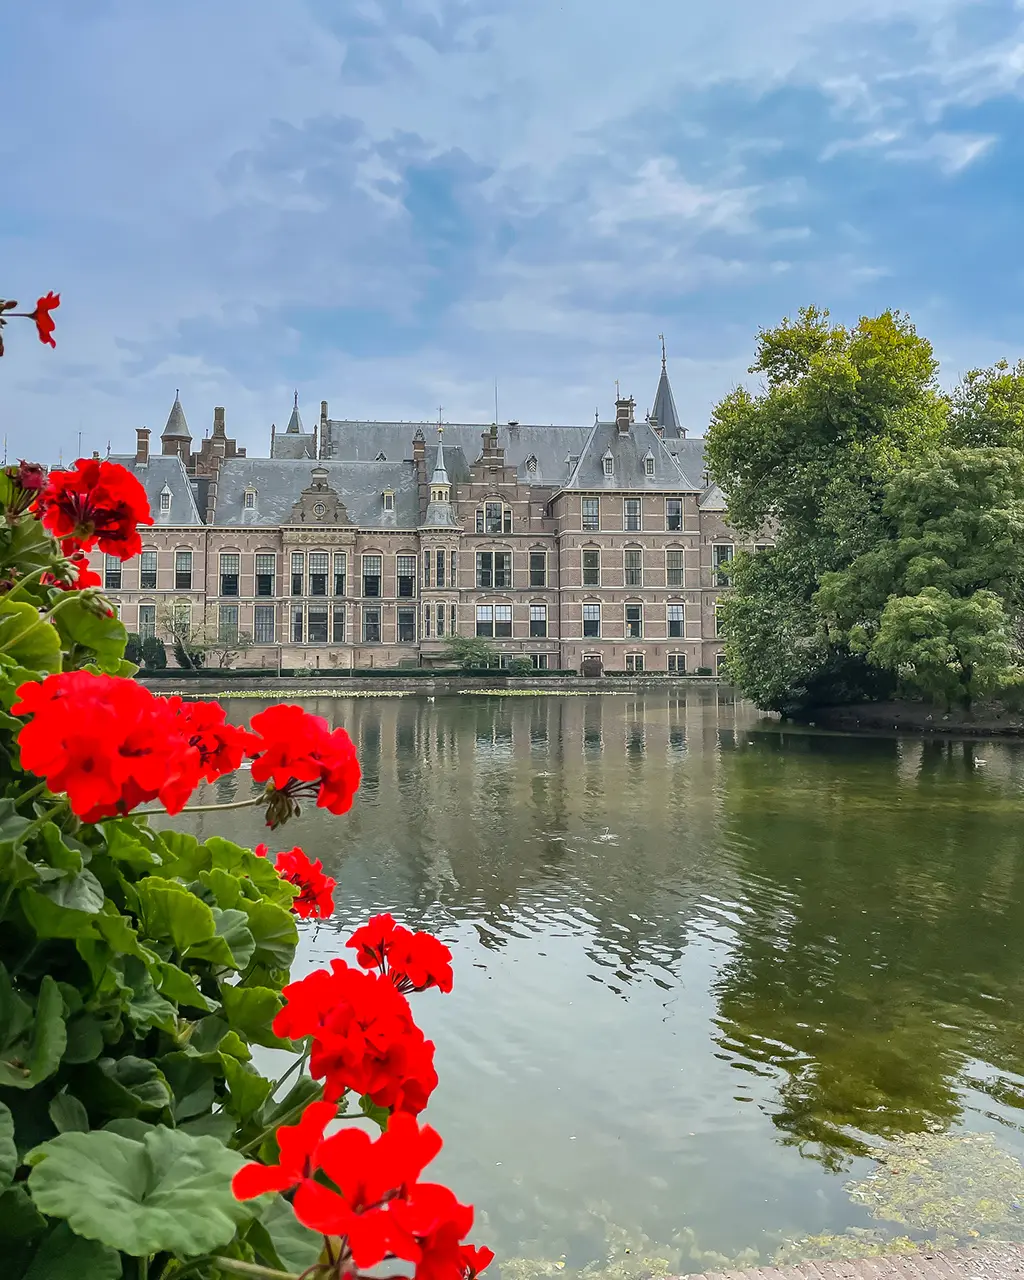 Visiter La Haye en 1 jour ou 2 jours